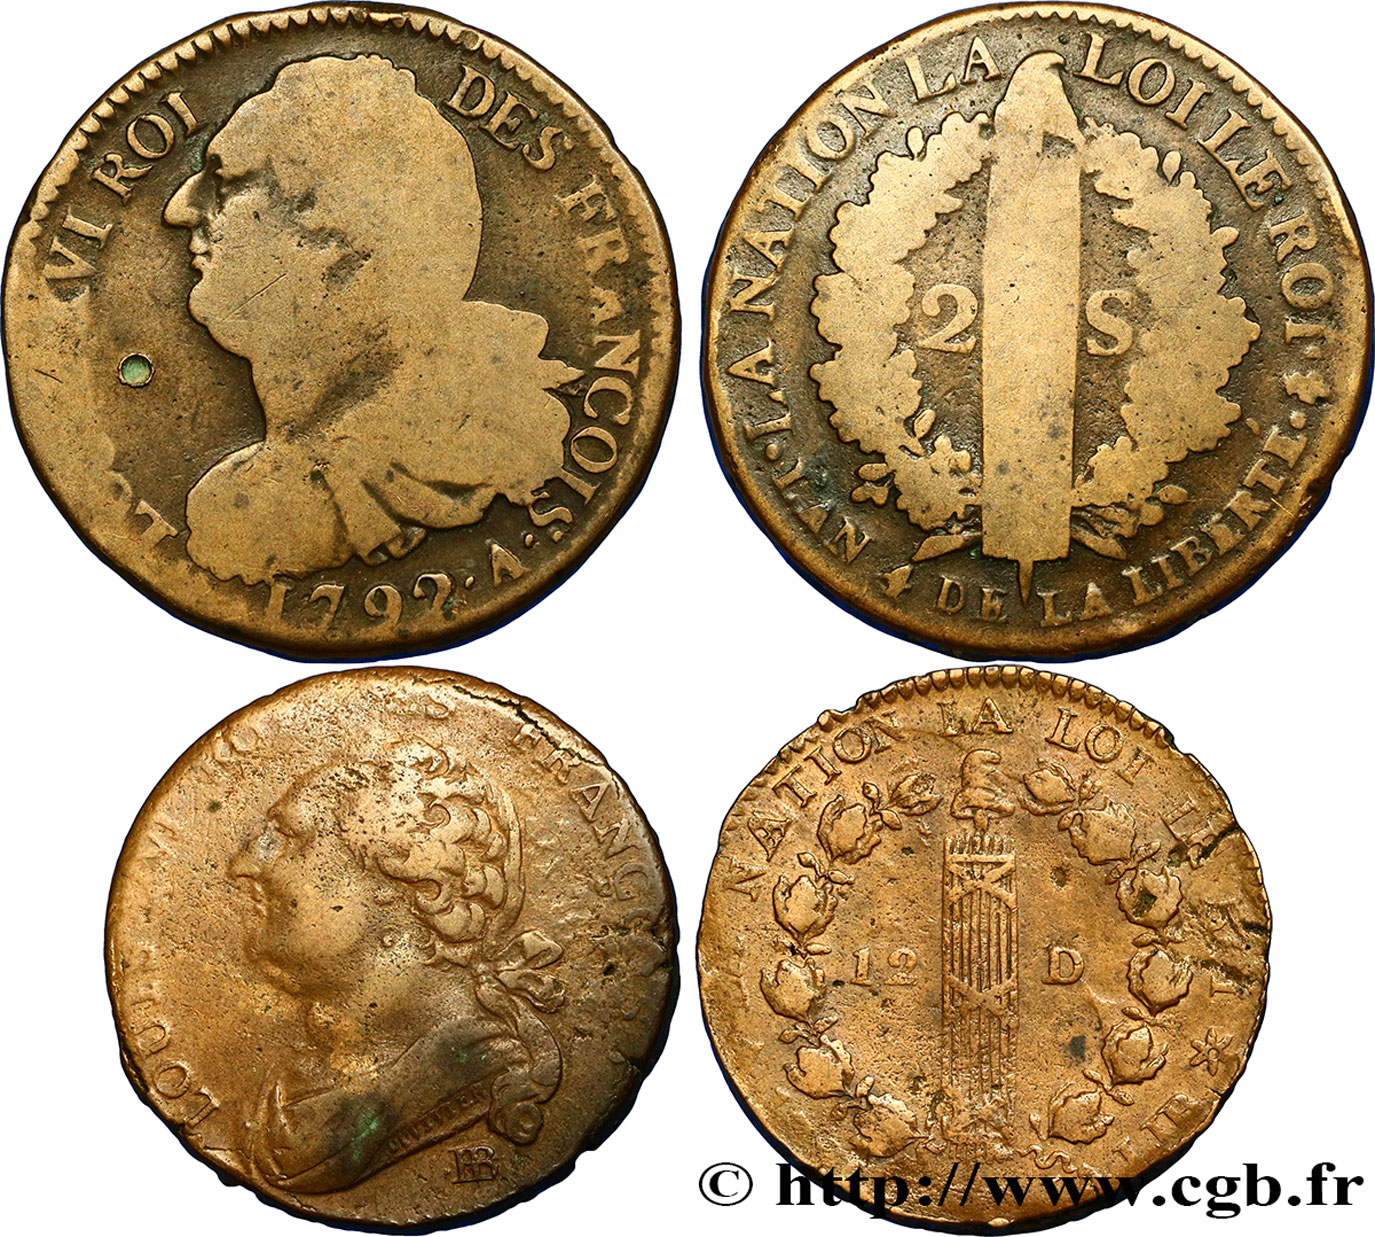 LOTS Lot de deux monnaies de la Révolution française n.d. s.l. VF